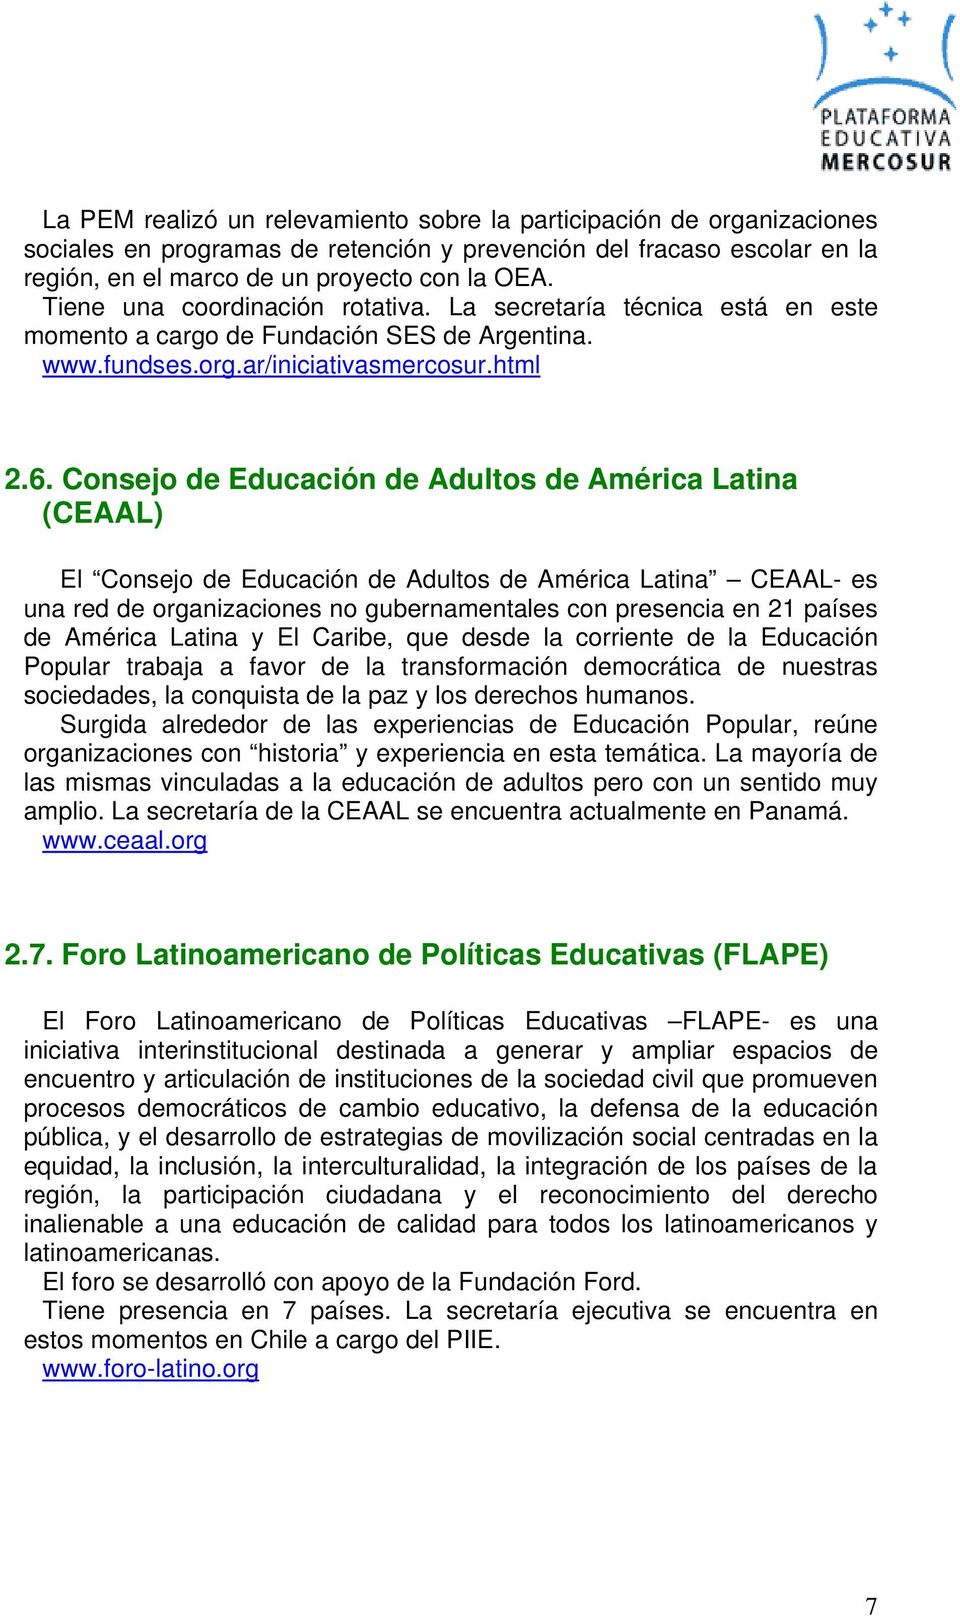 Consejo de Educación de Adultos de América Latina (CEAAL) El Consejo de Educación de Adultos de América Latina CEAAL- es una red de organizaciones no gubernamentales con presencia en 21 países de